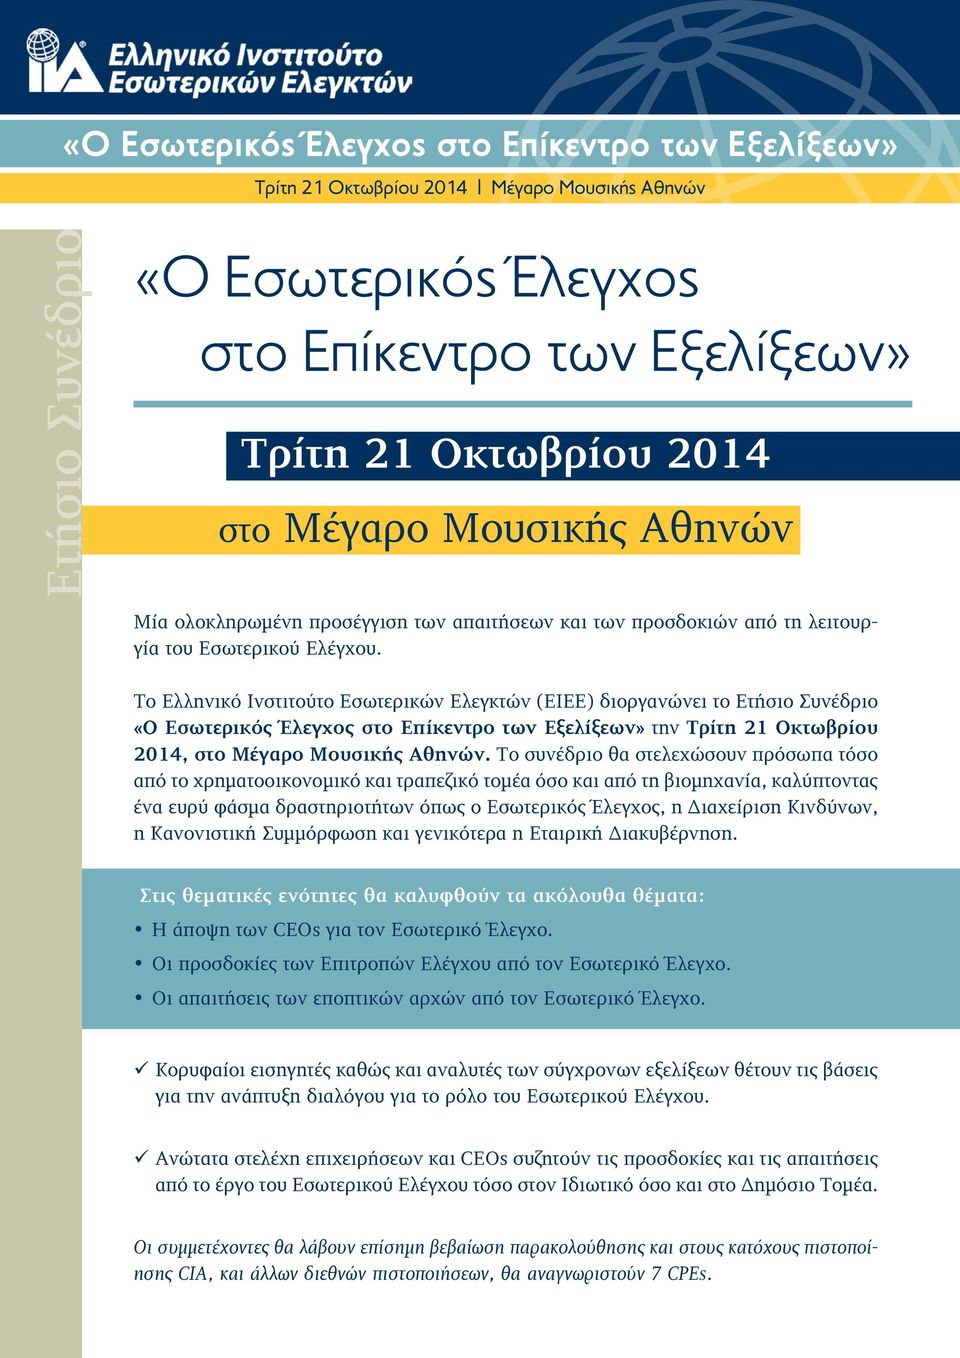 Το Ελληνικό Ινστιτούτο Εσωτερικών Ελεγκτών (ΕΙΕΕ) διοργανώνει το Ετήσιο Συνέδριο «Ο Εσωτερικός Έλεγχος στο Επίκεντρο των Εξελίξεων» την Τρίτη 21 Οκτωβρίου 2014, στο Μέγαρο Μουσικής Aθηνών.